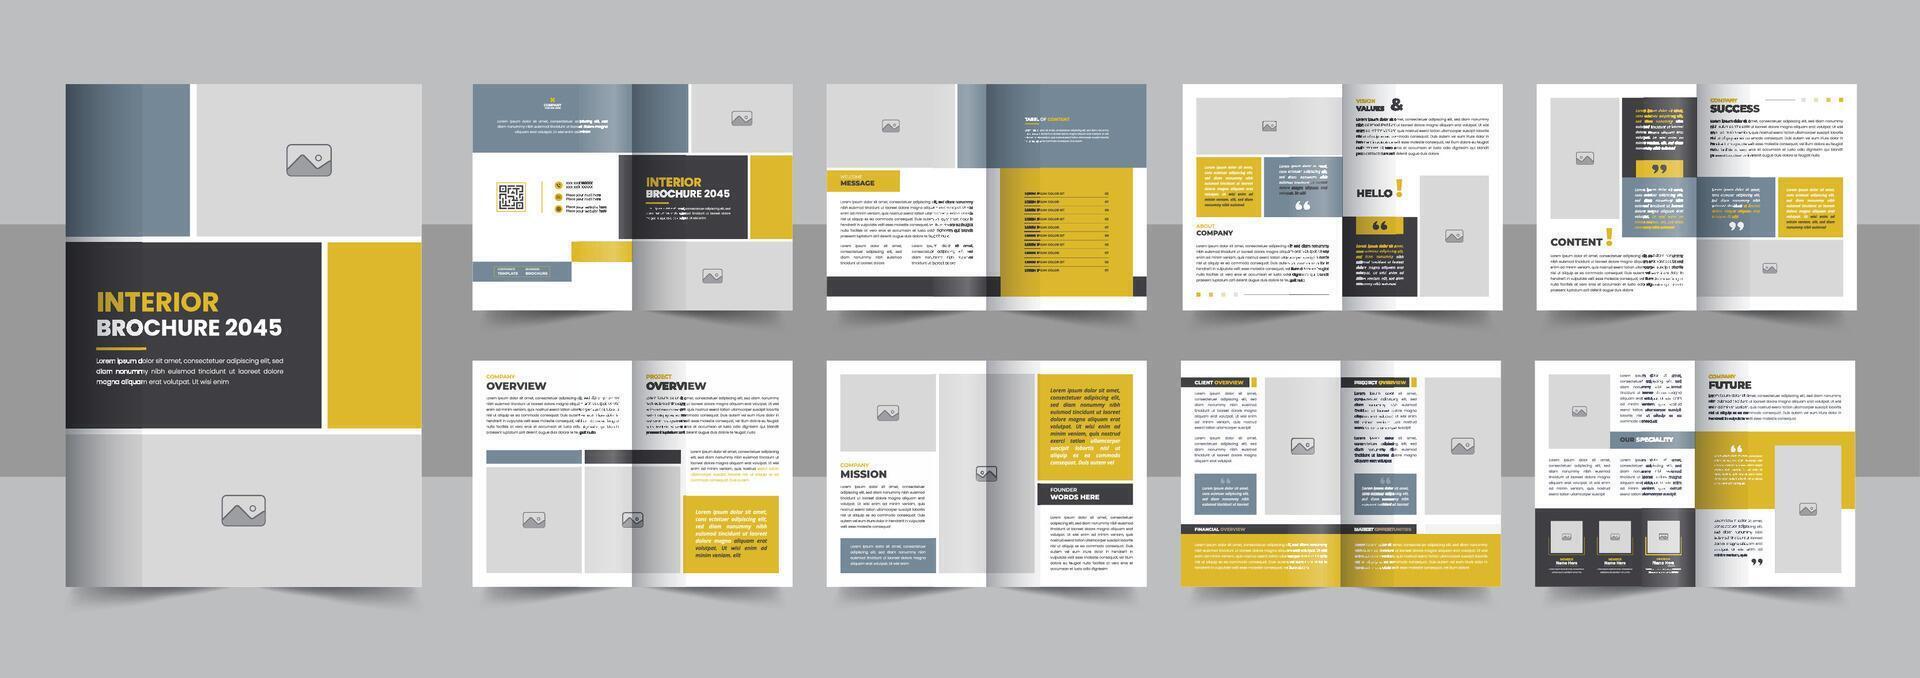 16 Seite Innere Broschüre Vorlage, Innere Design Zeitschrift Layout zum Zuhause Dekoration oder Marke Identität Richtlinien Broschüre vektor